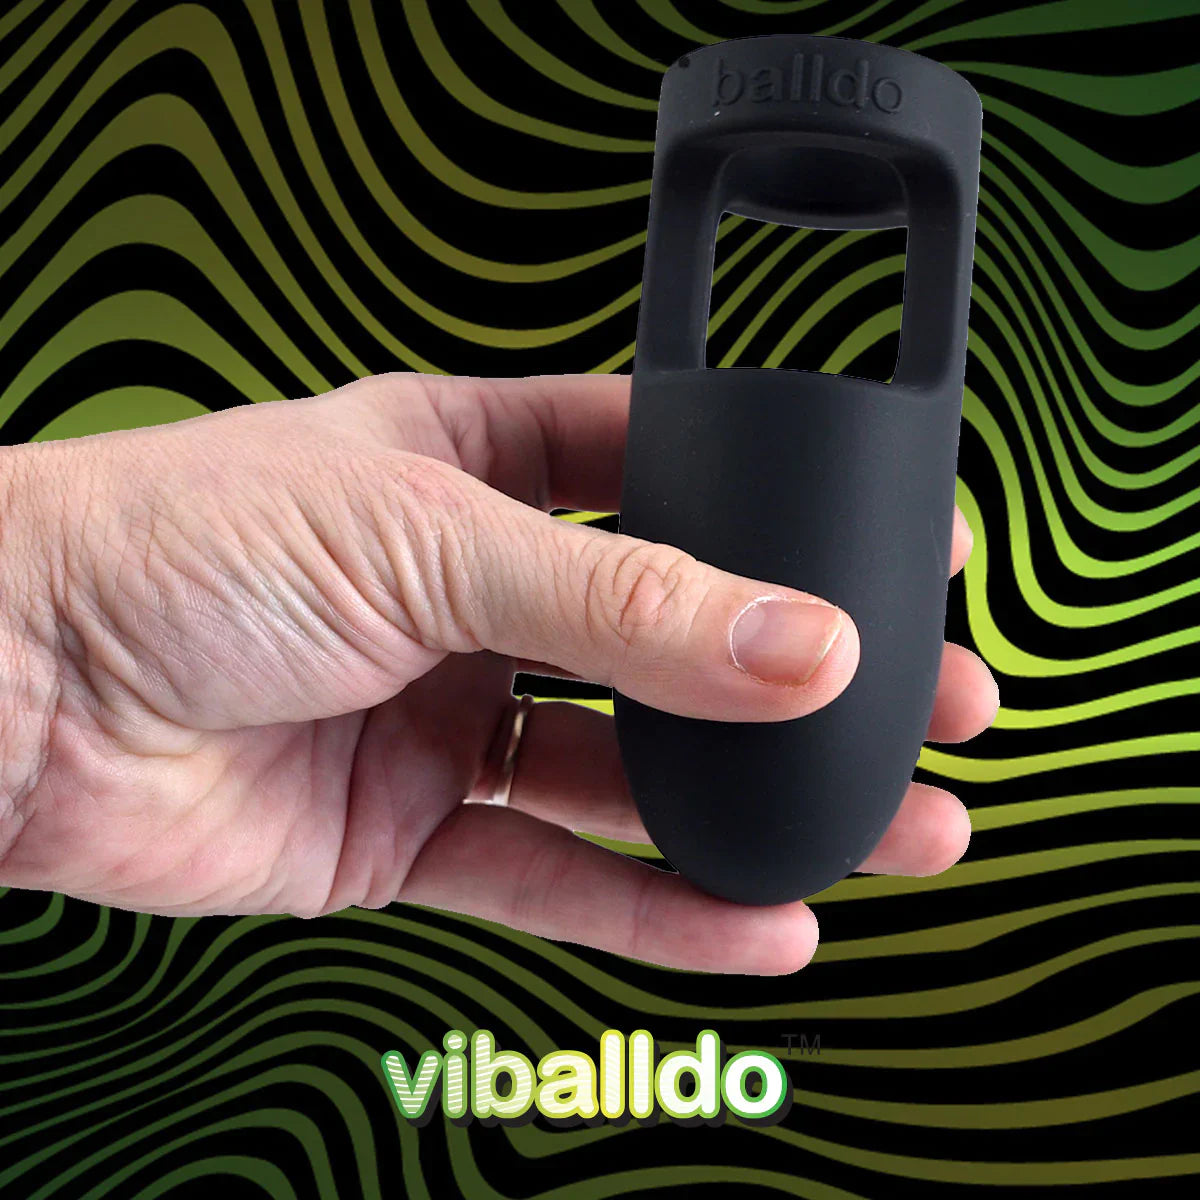 Viballdo™ - The Vibrating Balldo™ Dildo - Rolik®